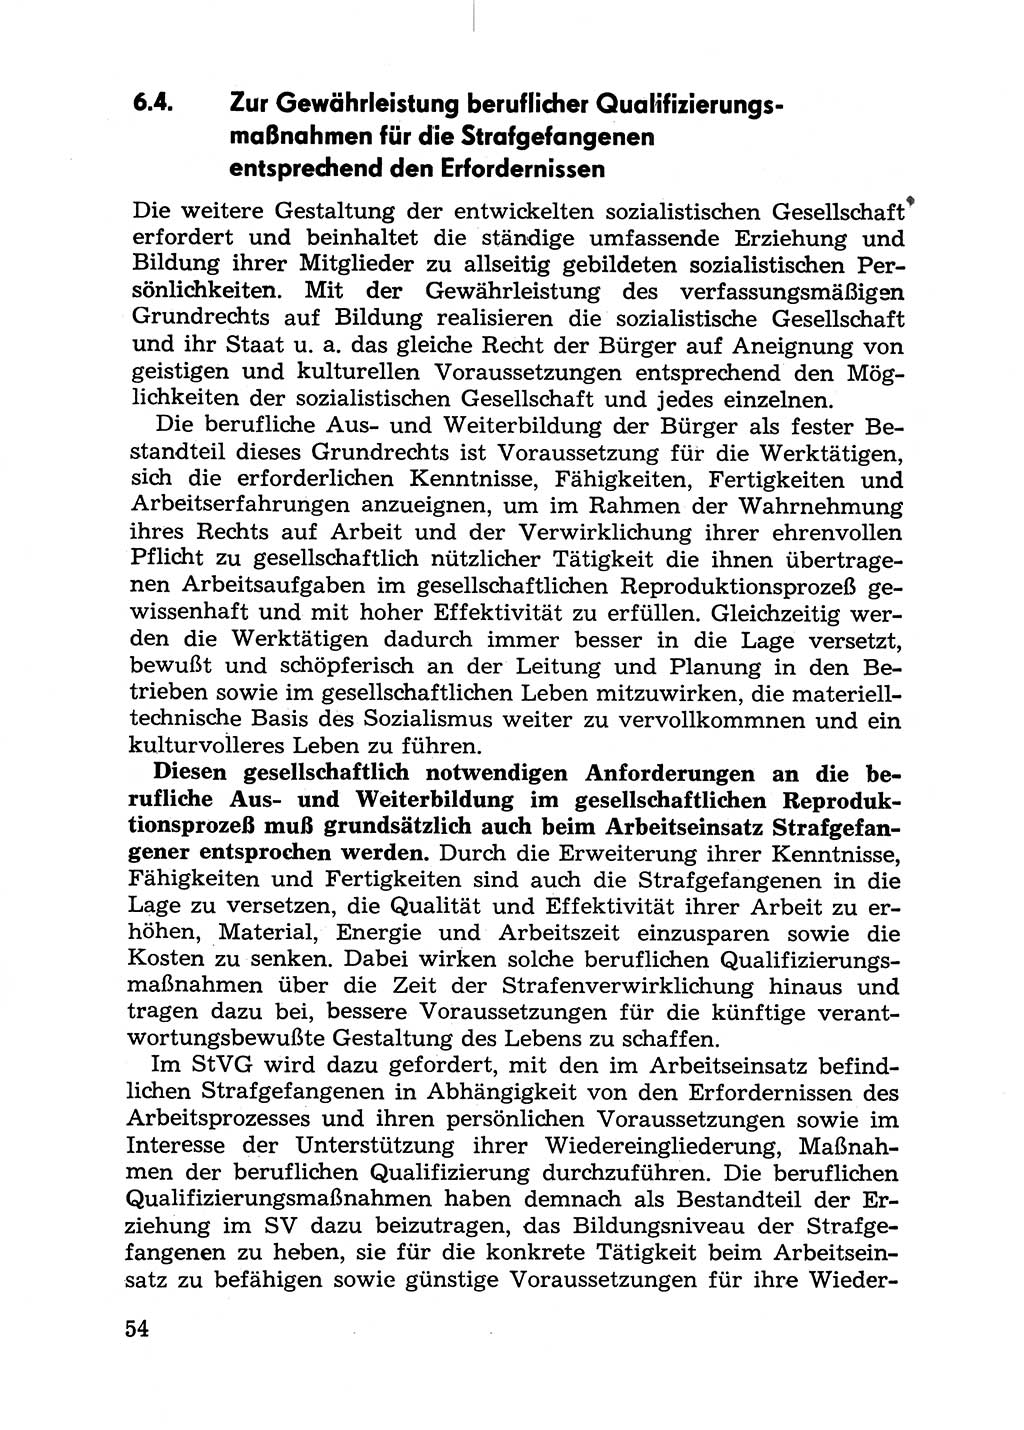 Handbuch für Betriebsangehörige, Abteilung Strafvollzug (SV) [Ministerium des Innern (MdI) Deutsche Demokratische Republik (DDR)] 1981, Seite 54 (Hb. BA Abt. SV MdI DDR 1981, S. 54)